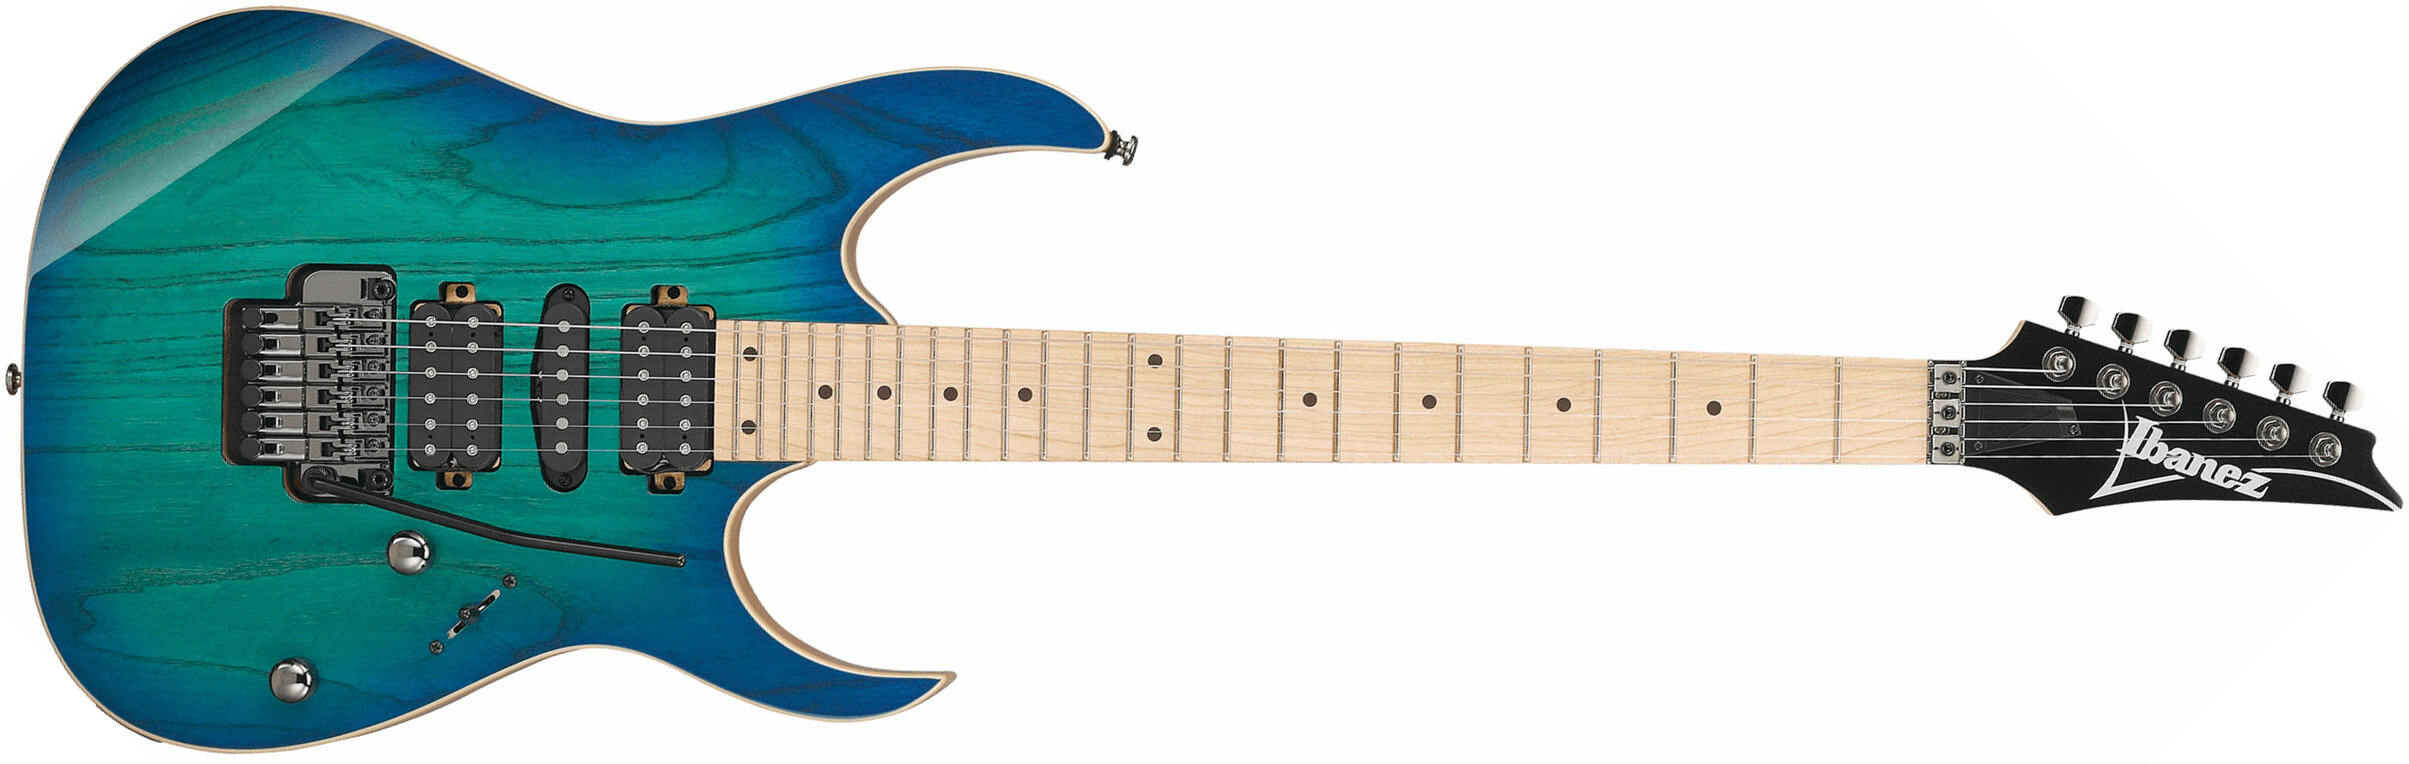 Ibanez Rg470ahm Bmt Standard Hsh Fr Mn - Blue Moon Burst - Guitarra eléctrica con forma de str. - Main picture